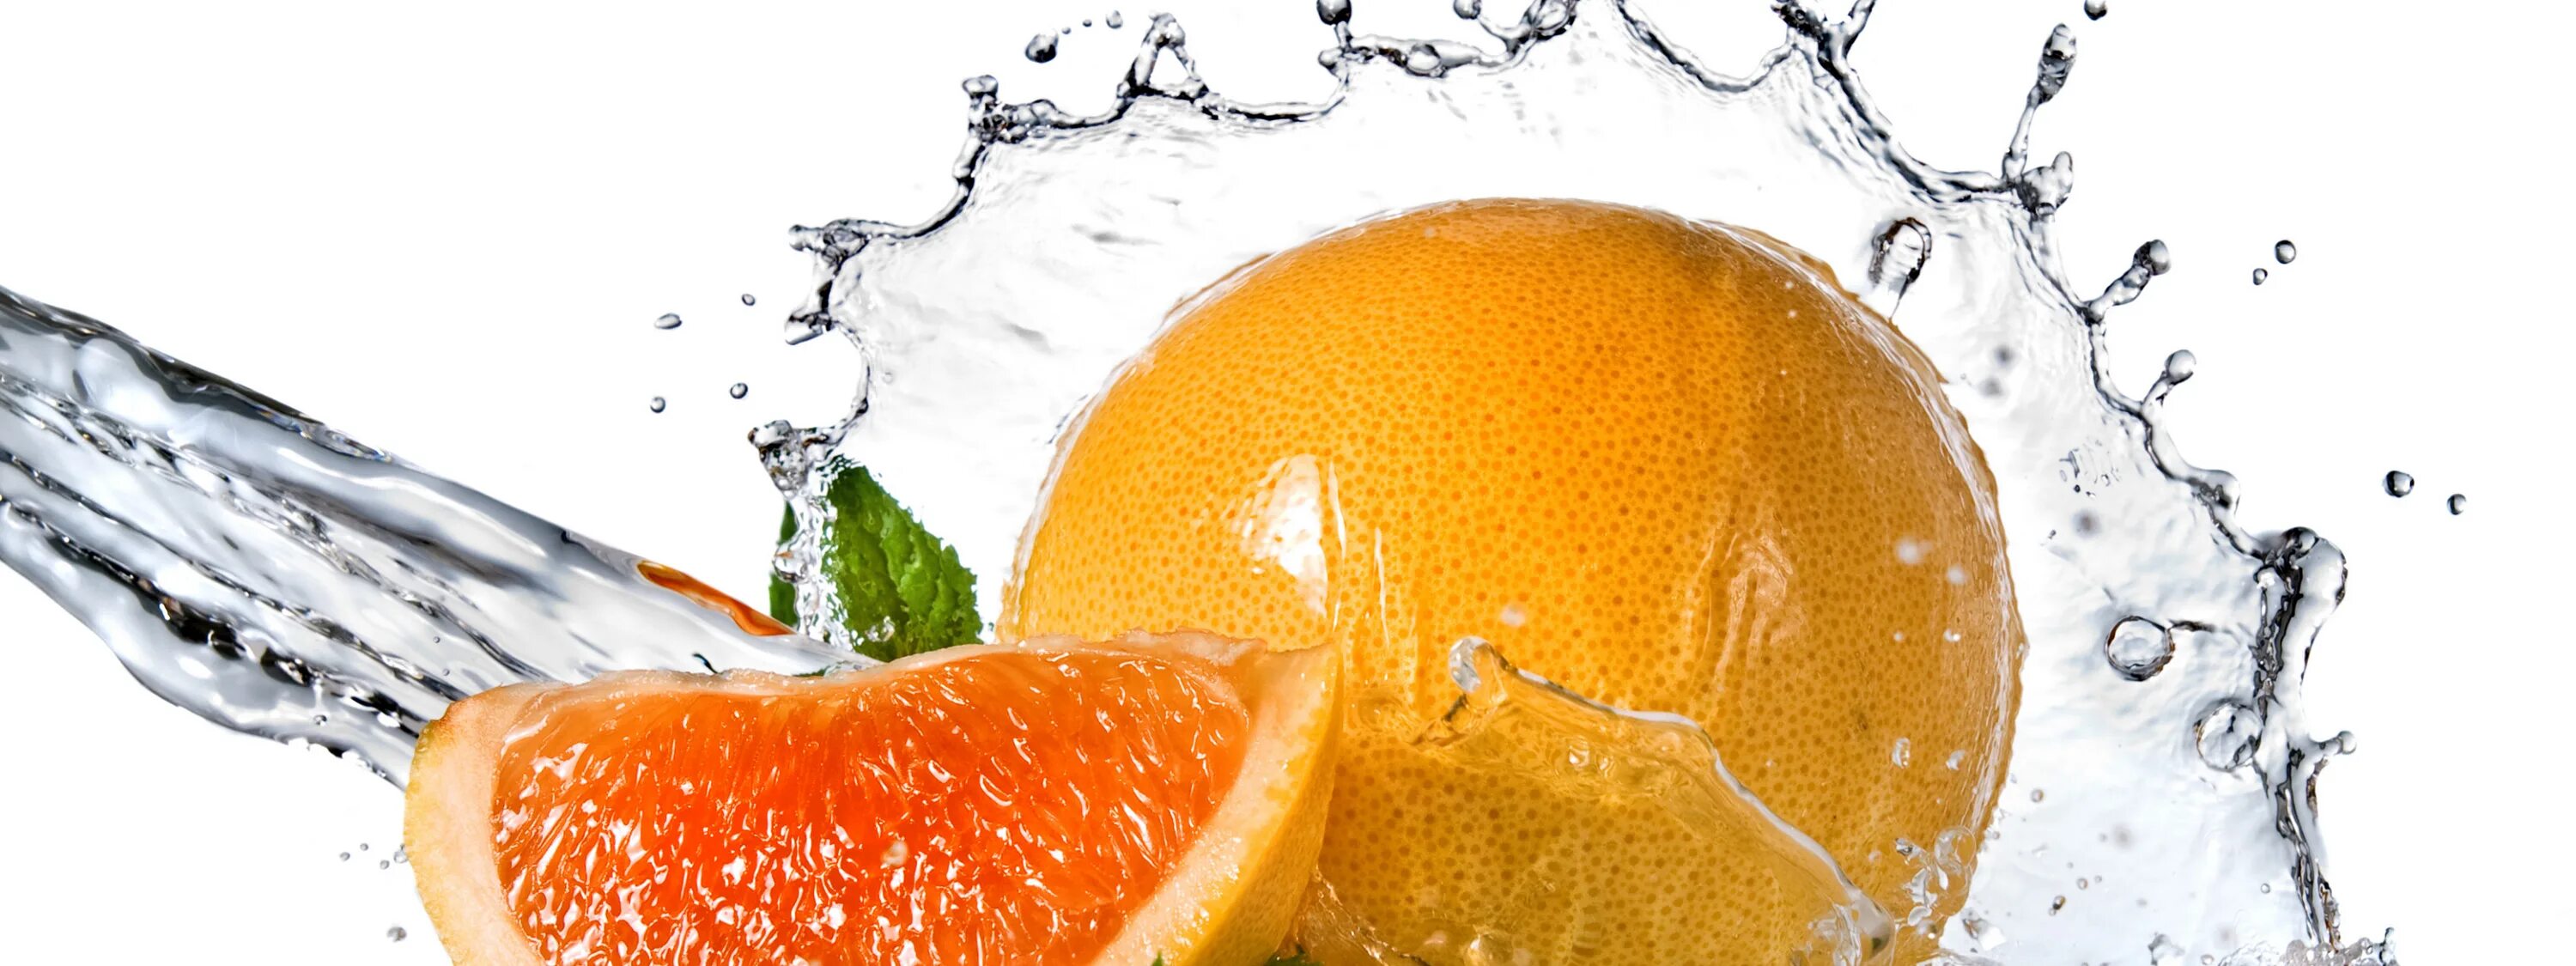 Апельсин в воде. Фруктовая свежесть. Фото фрукты в воде. Обои на рабочий стол апельсин в воде. Свежесть сайт